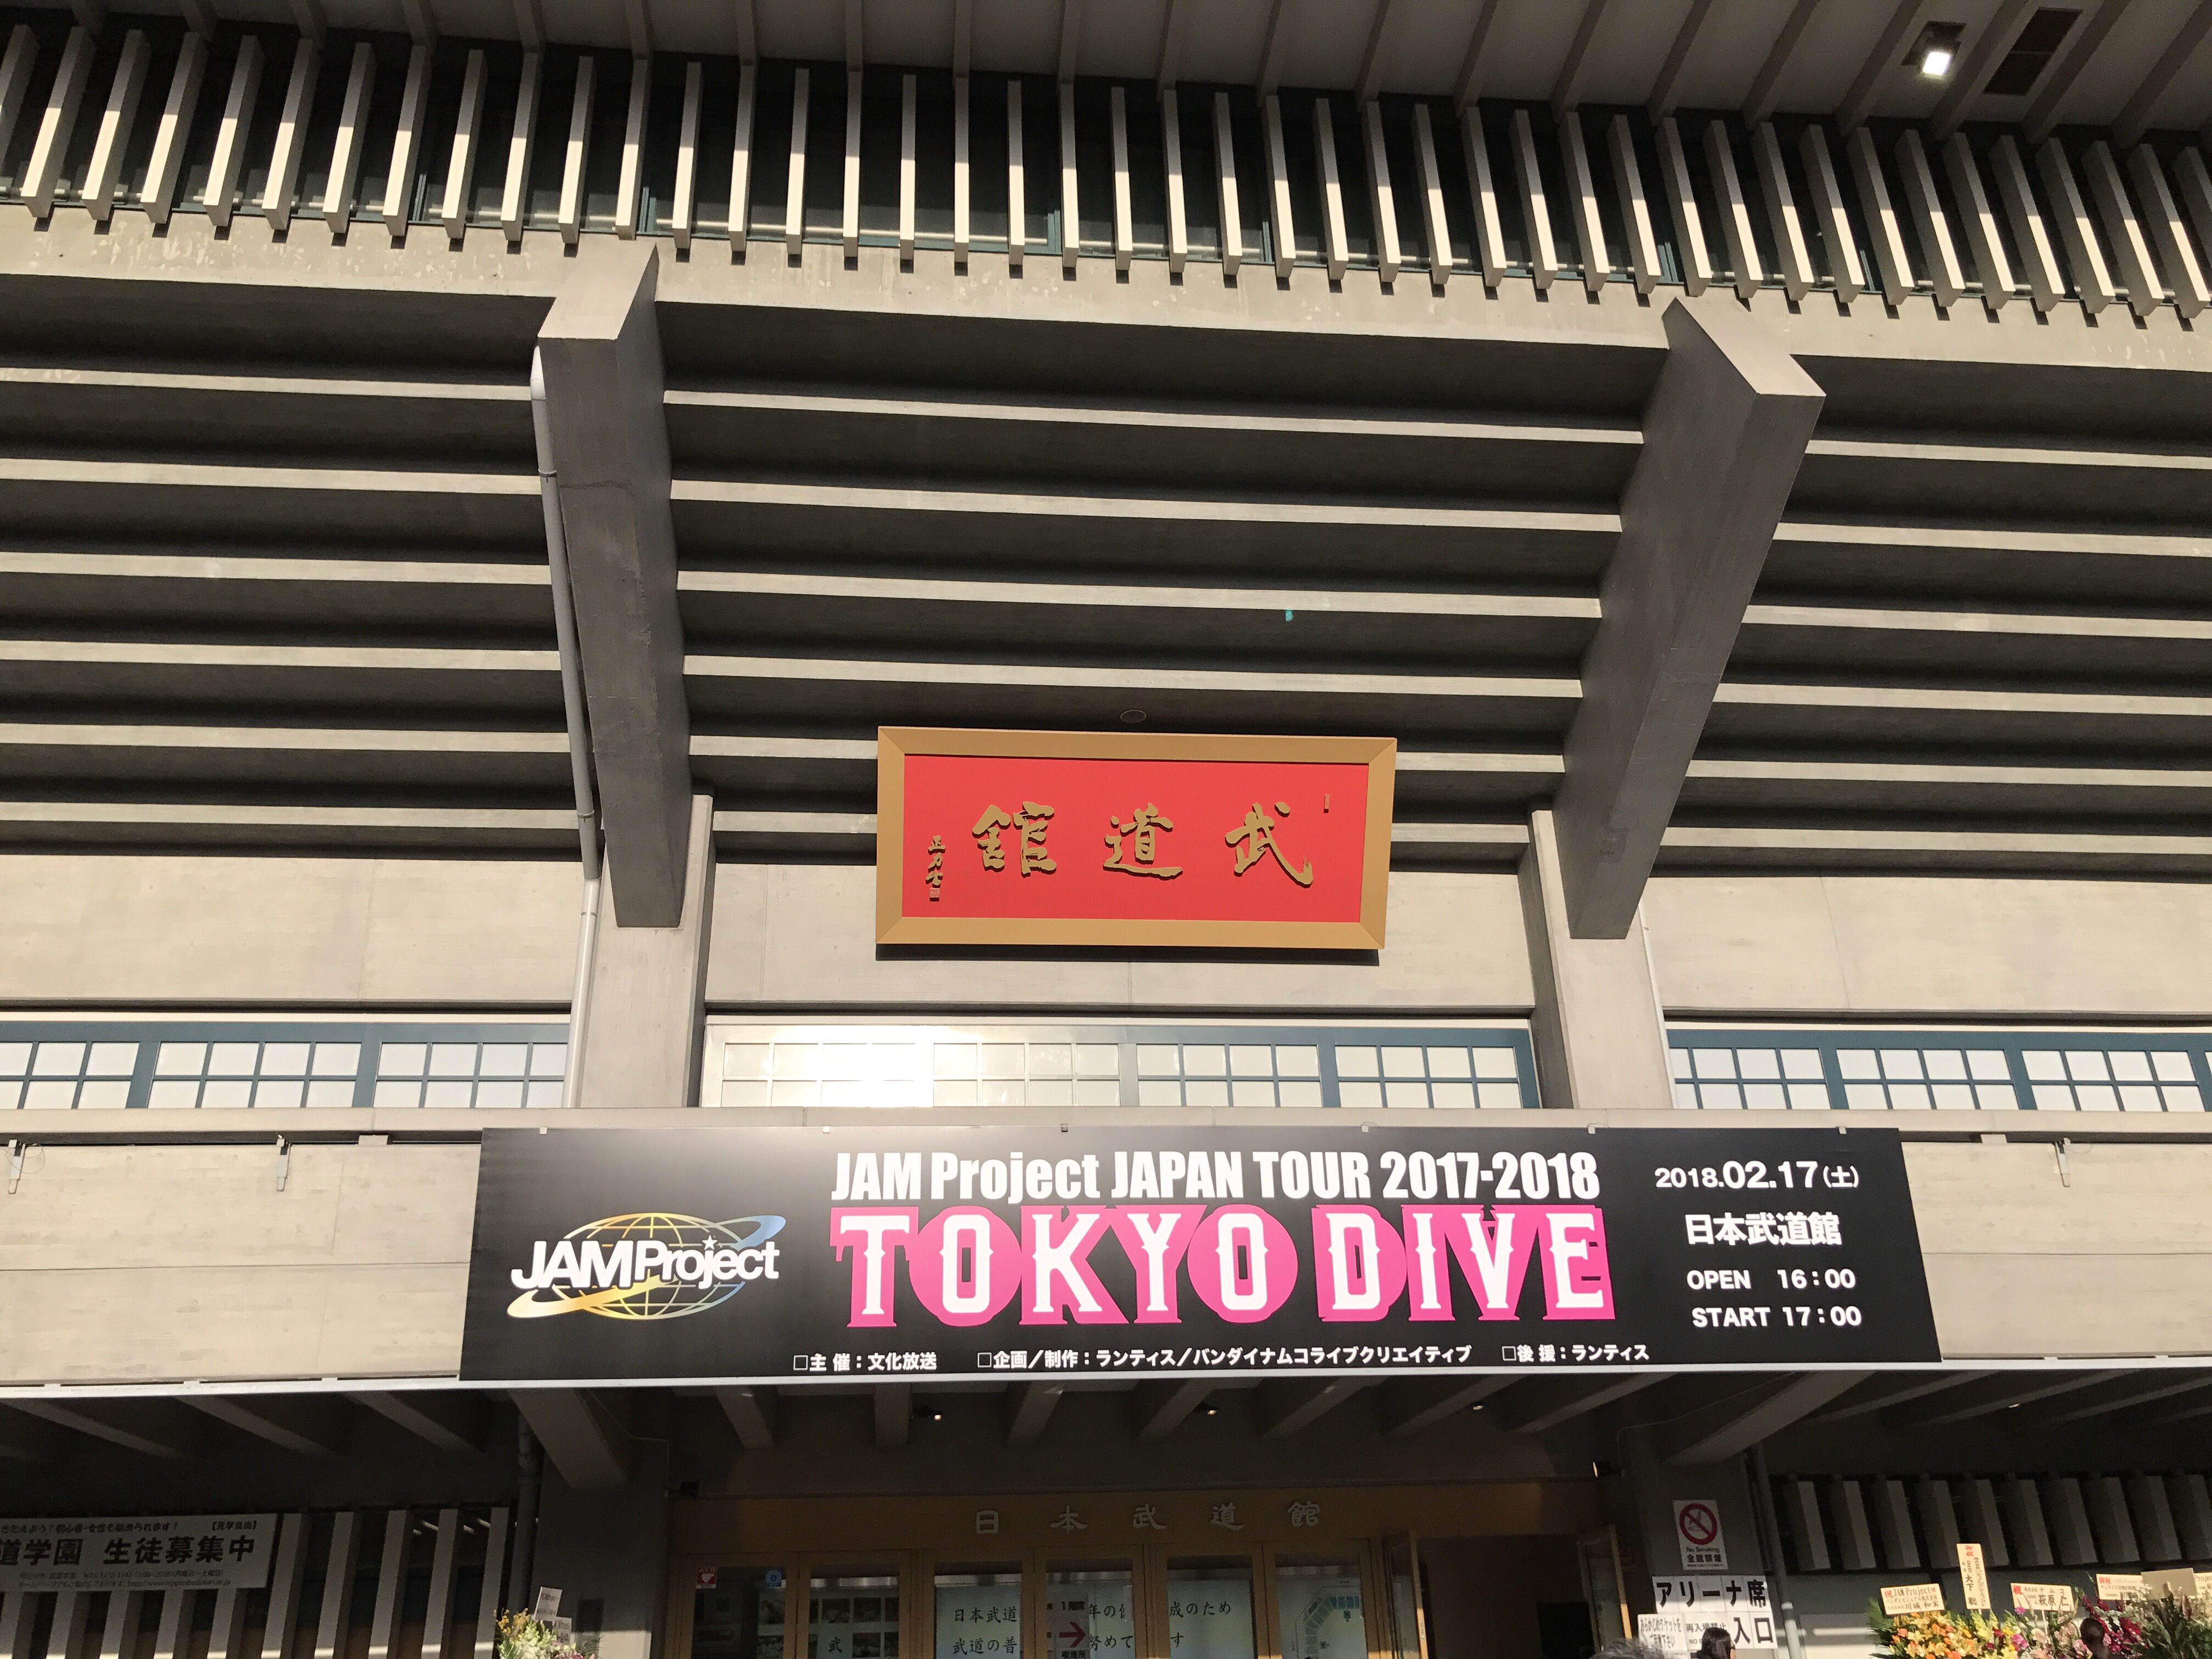 Jam Project Tokyo Dive ツアーファイナル日本武道館 Dark Lord S Dark Road